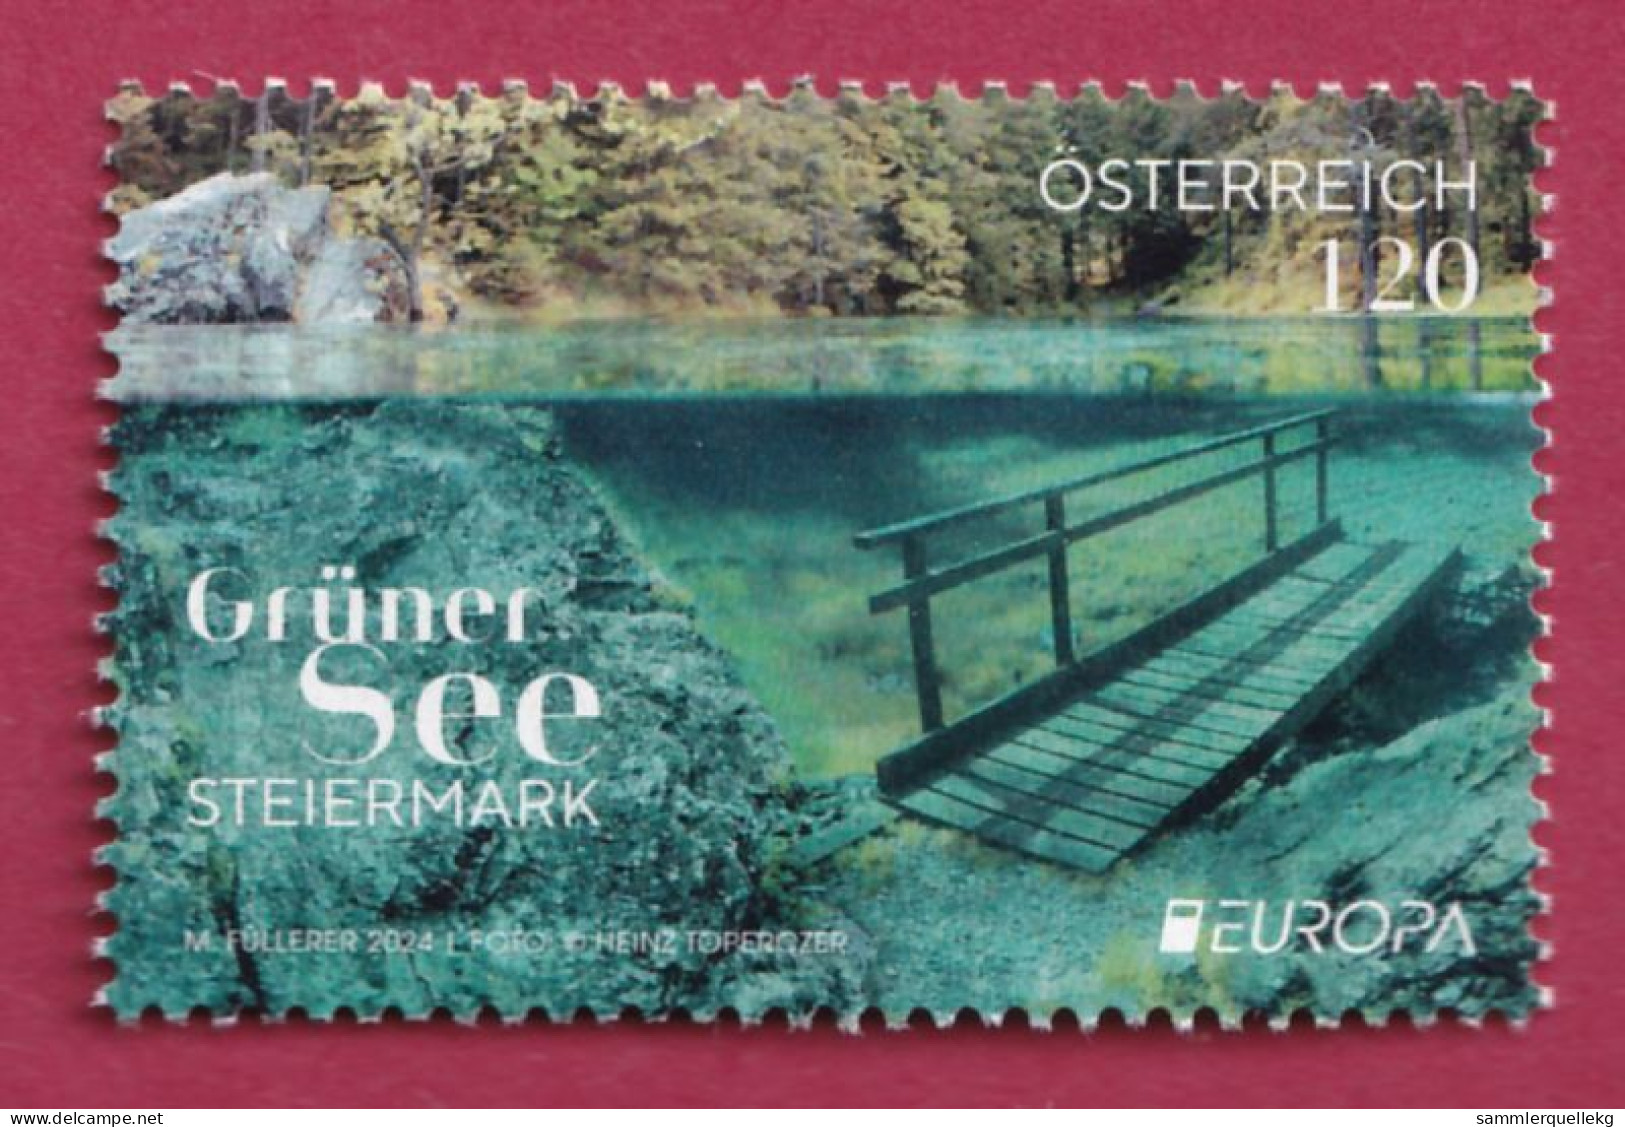 Österreich Europa 2024: Grüner See Postfrisch - Ongebruikt